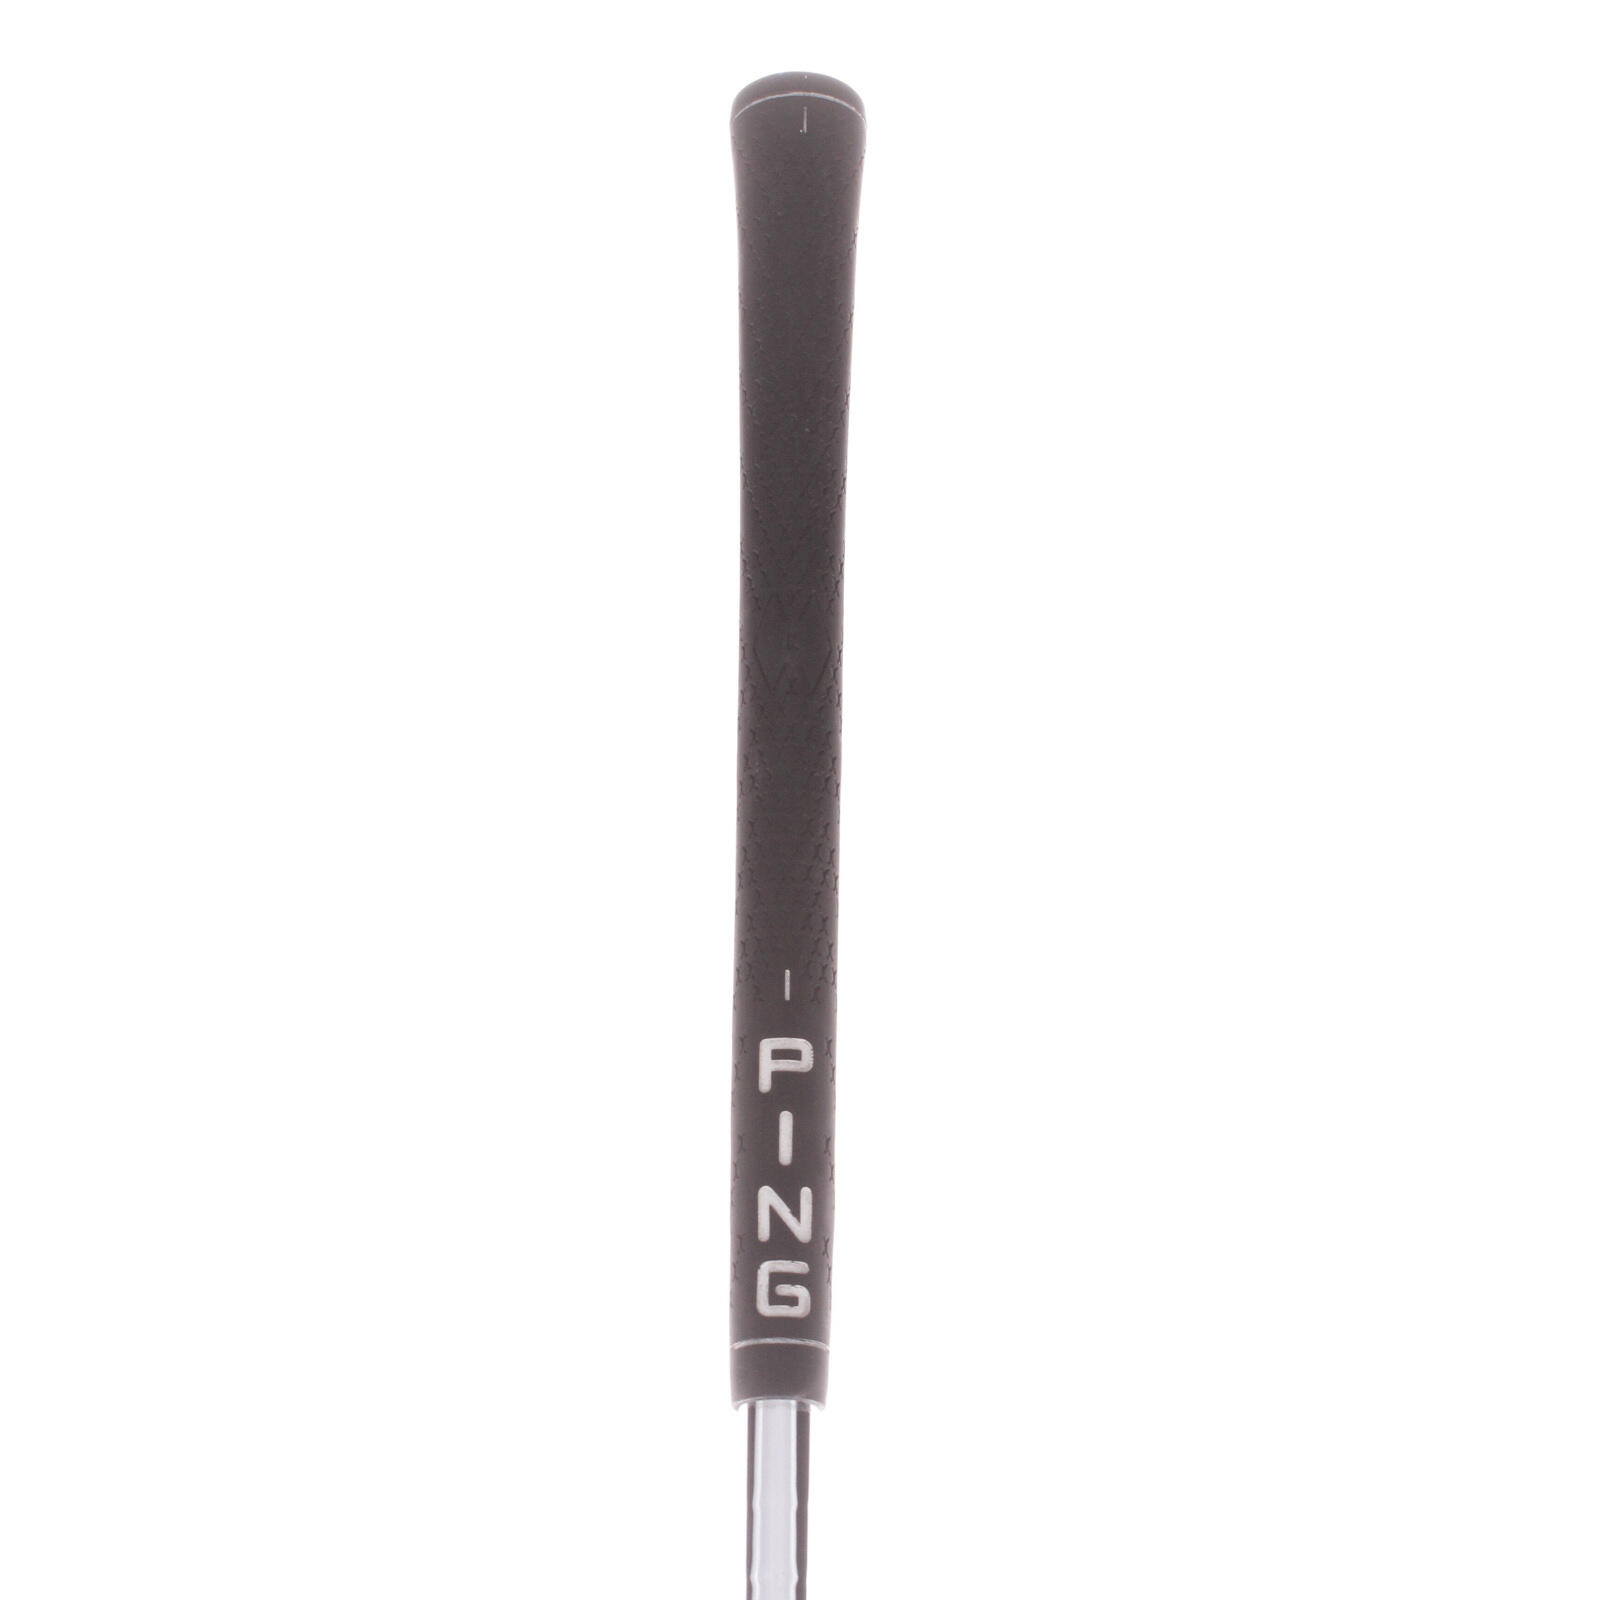 USED - 6 Iron Ping G2 Steel Shaft Regular Flex Right Handed - GRADE C 5/5